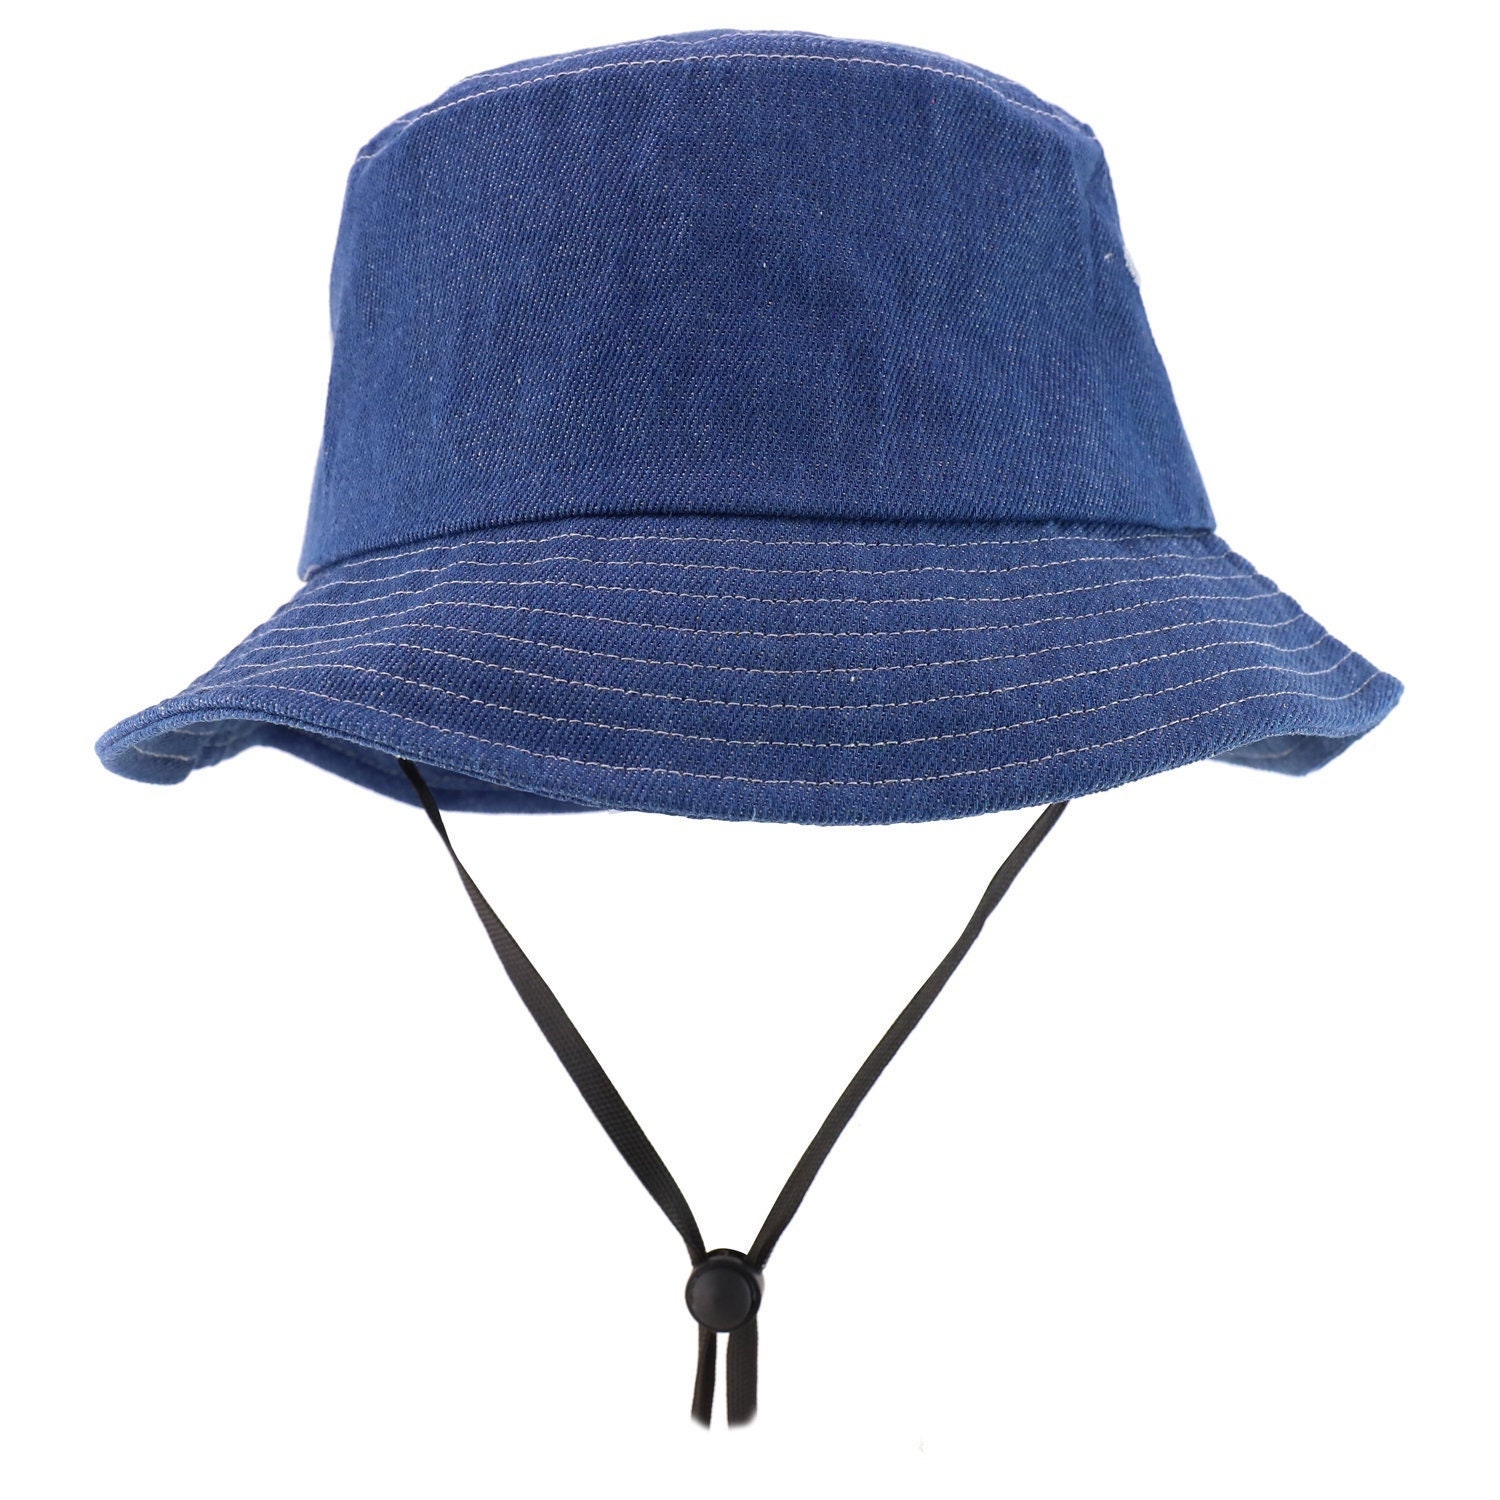 Oversized XXL Big Size Denim Fisherman Bucket Hat With Chin